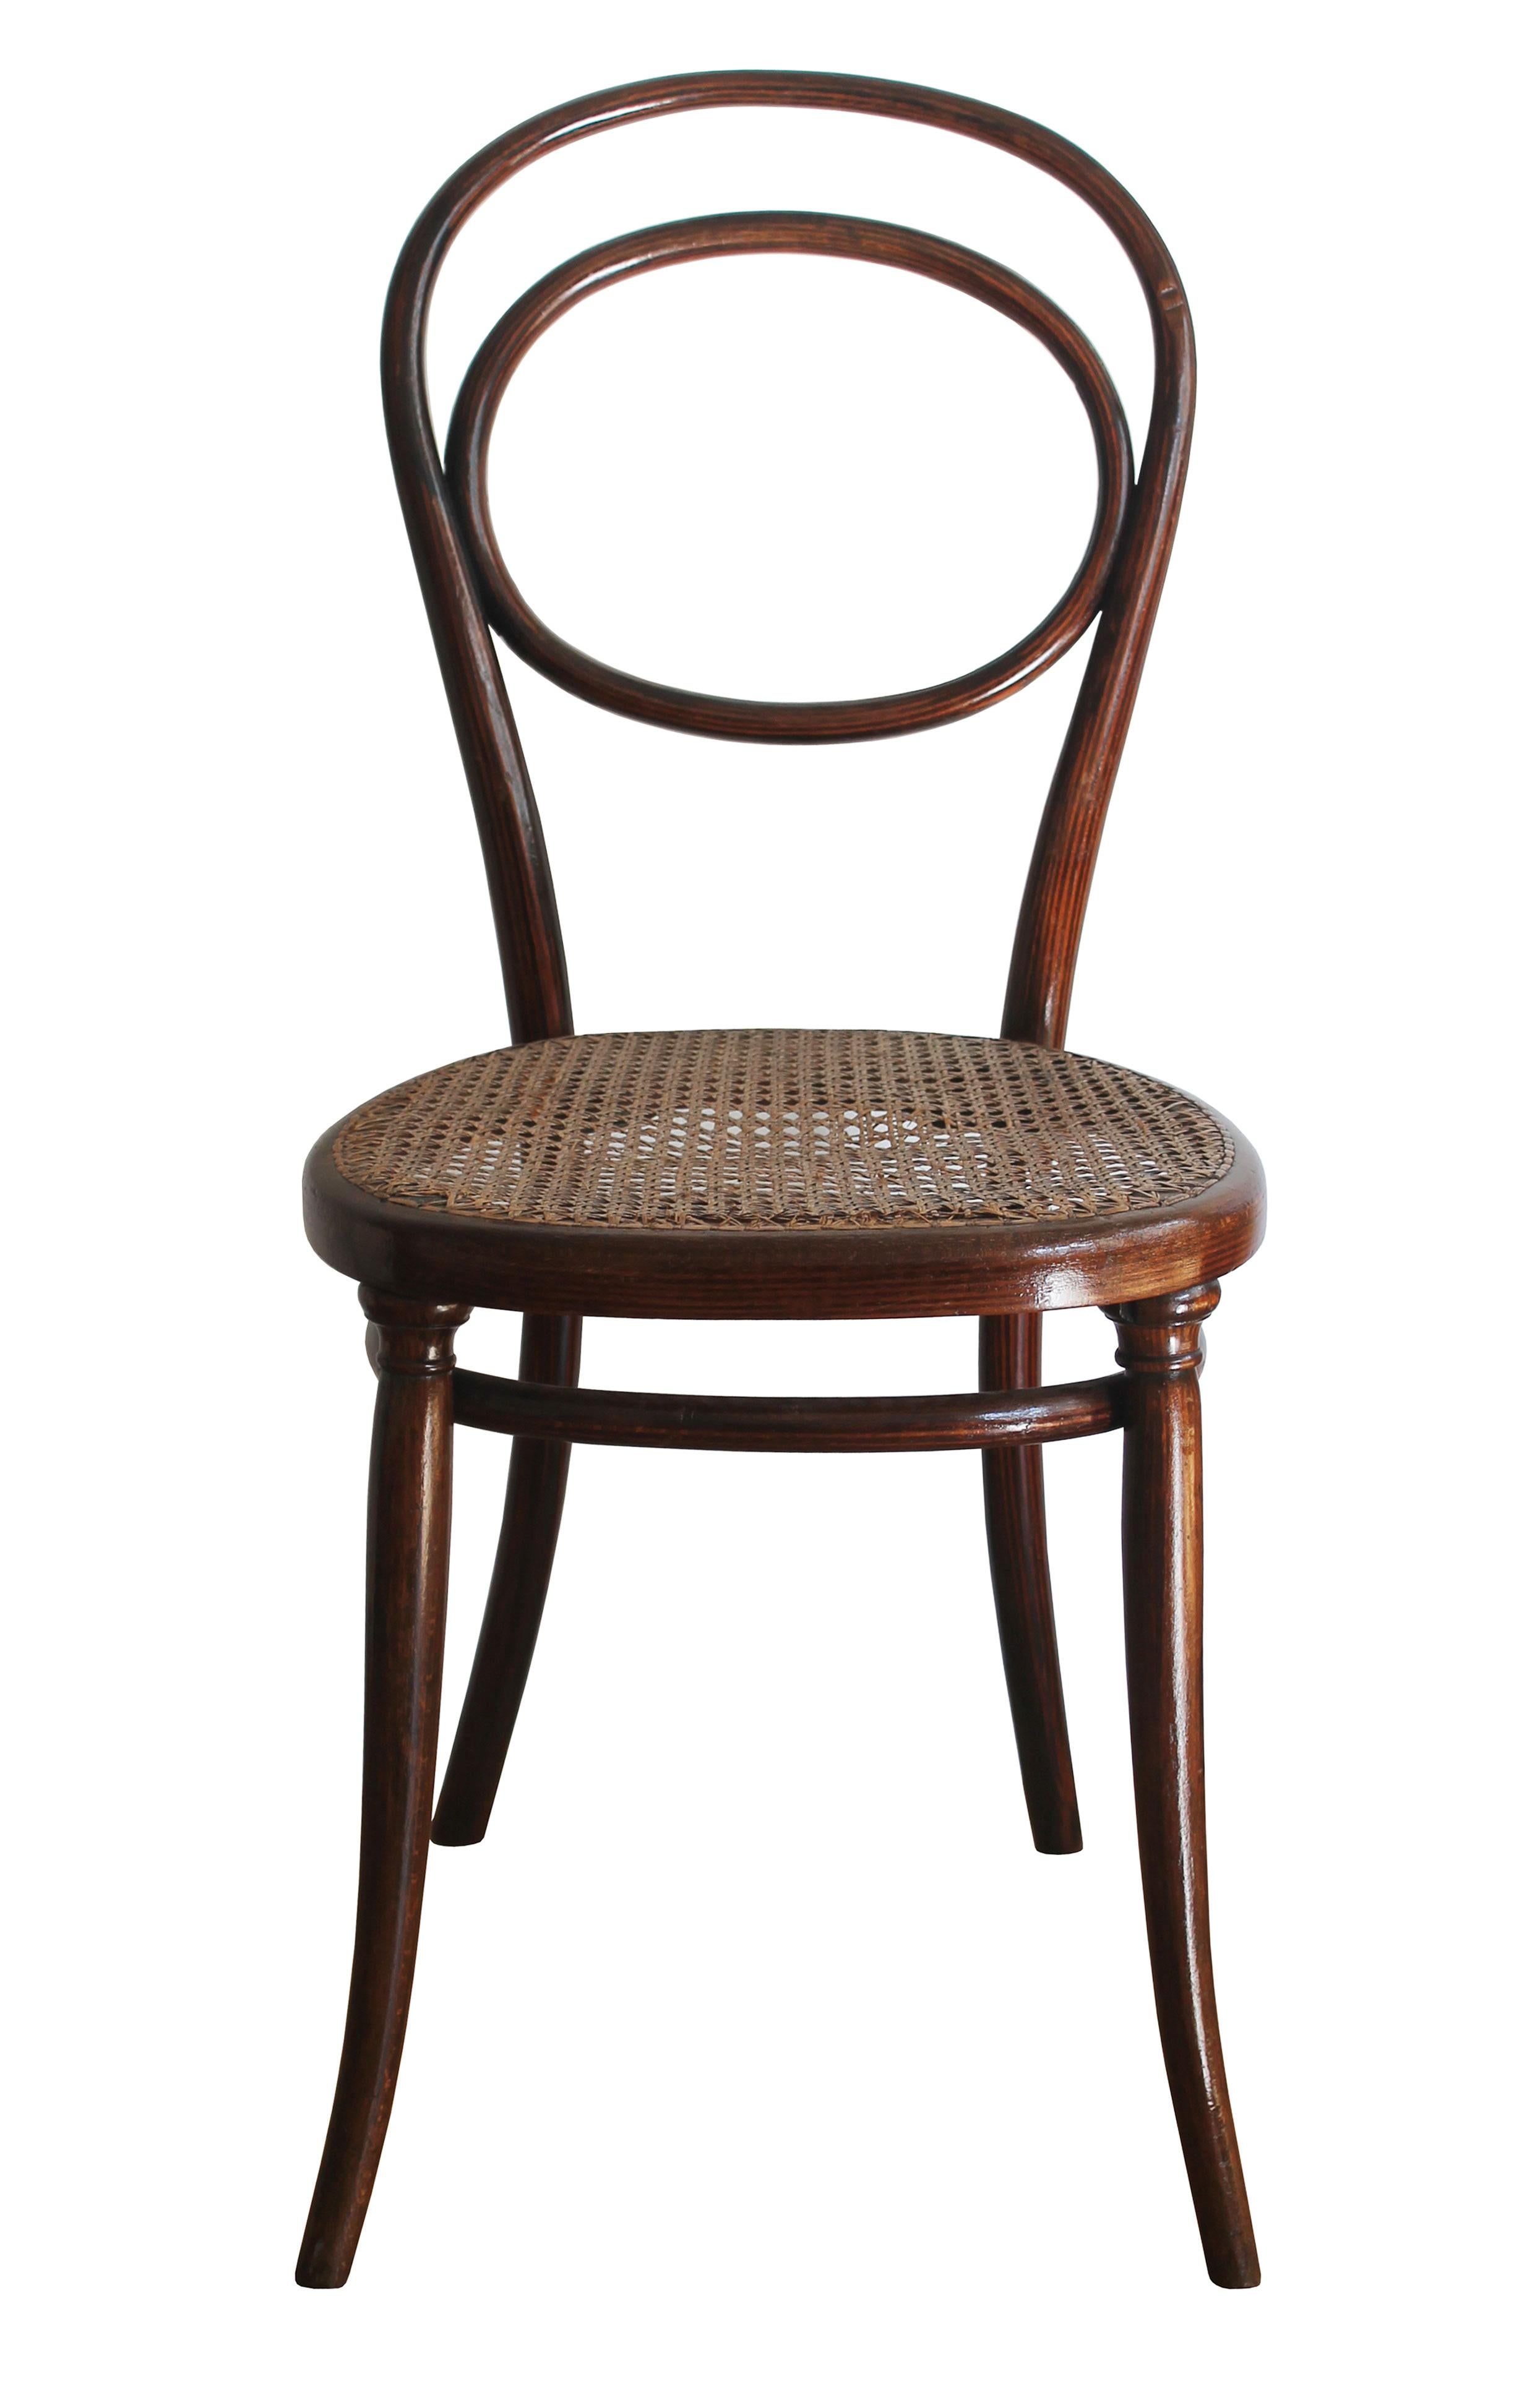 Ein seltener Bugholz-Esszimmerstuhl mit schön gemustertem Holz und geflochtenem Rattansitz. Dieses Stück wurde von den Gebrüdern Thonet um 1850 entworfen und hergestellt. Im alten Thonet-Möbelkatalog finden wir den Stuhl als 